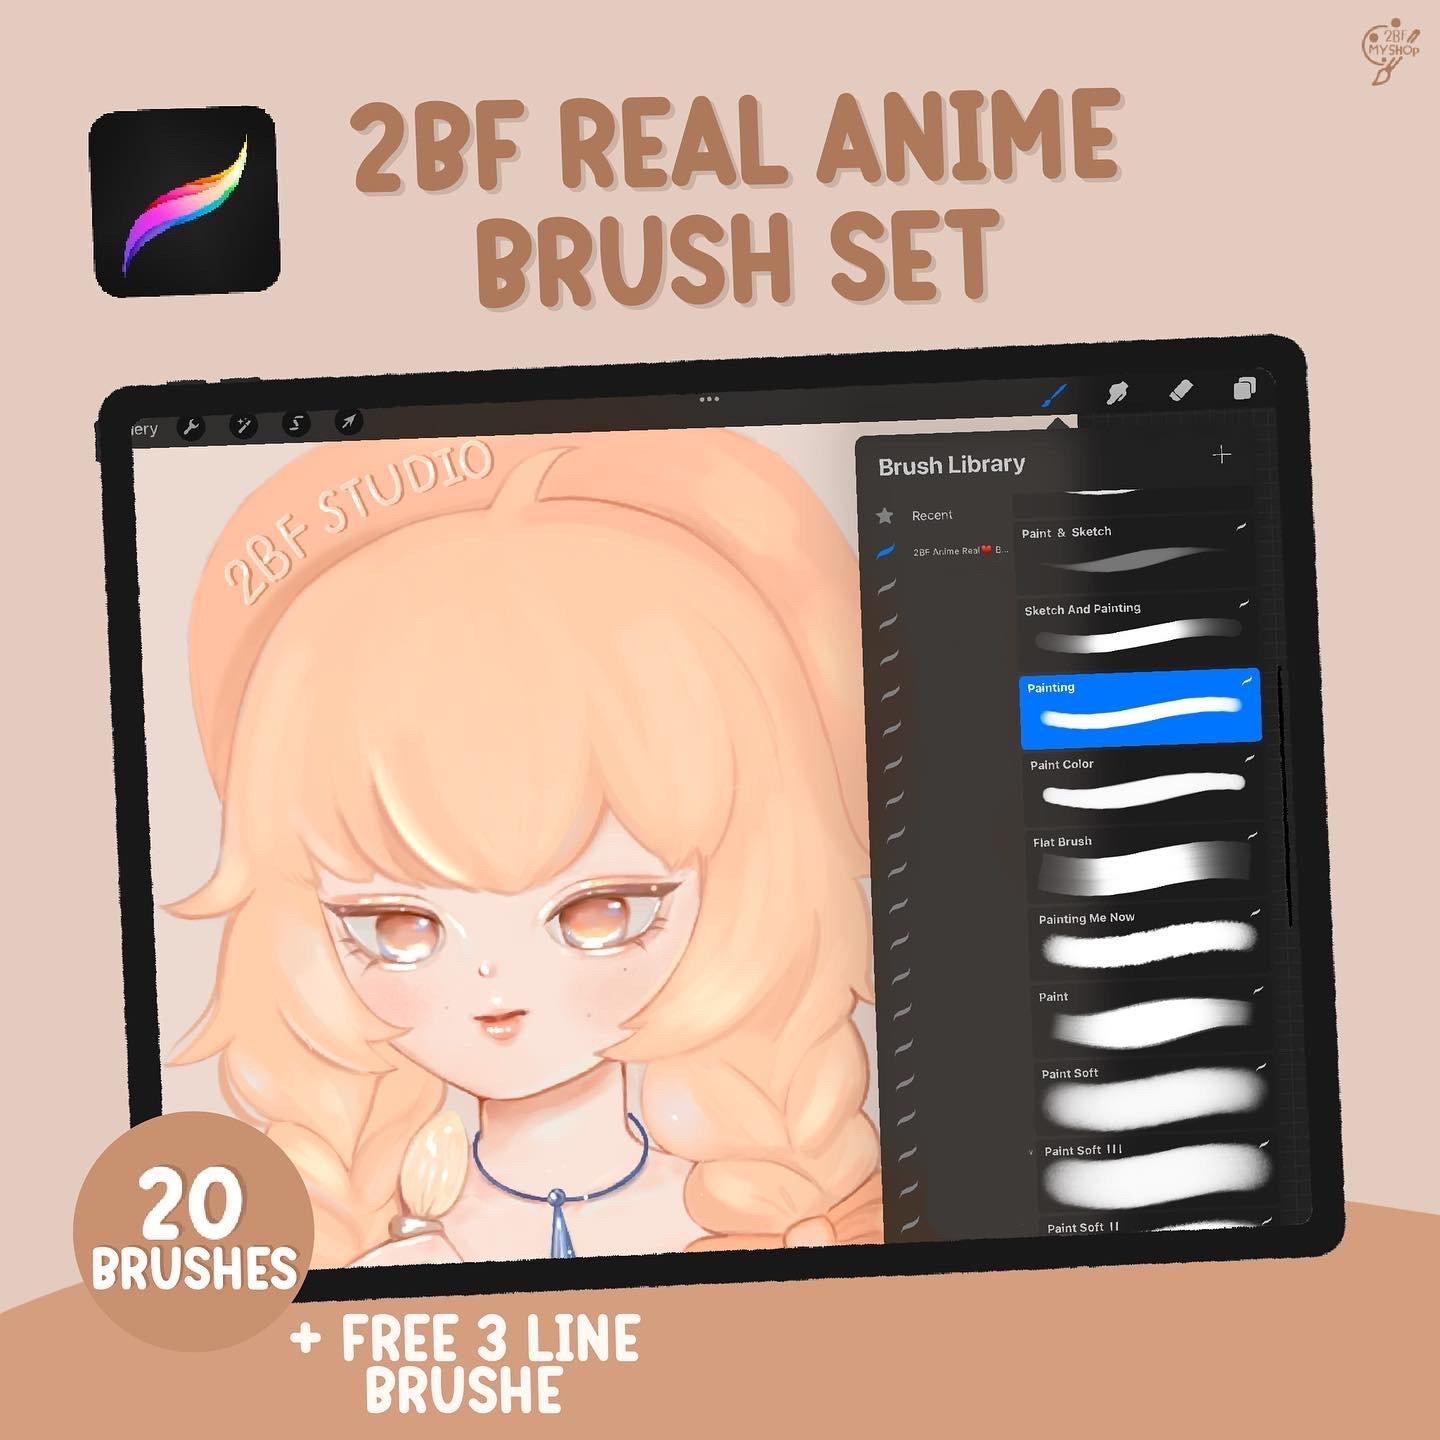 2BF Real Anime Brush Set